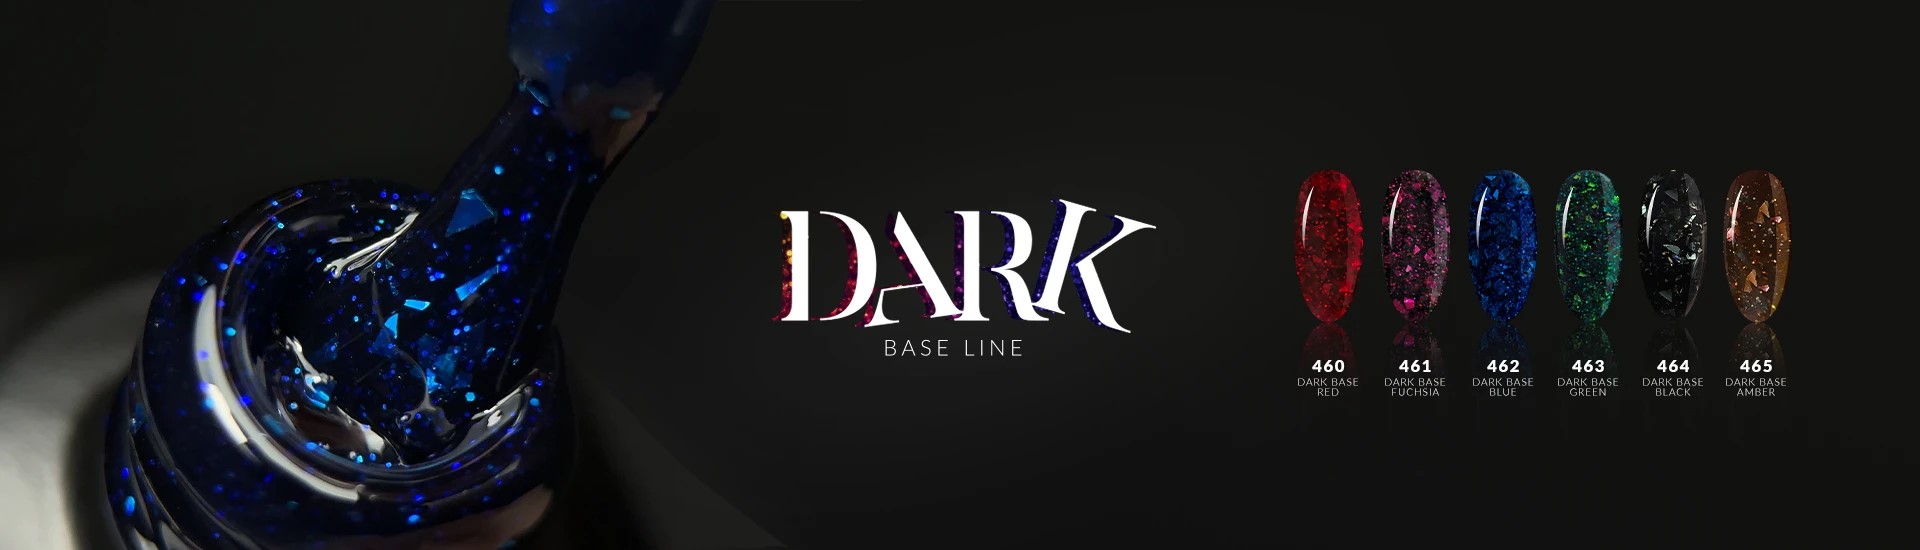 Dark Base Cover Line - Linia Podstawowa - Mistic Queen